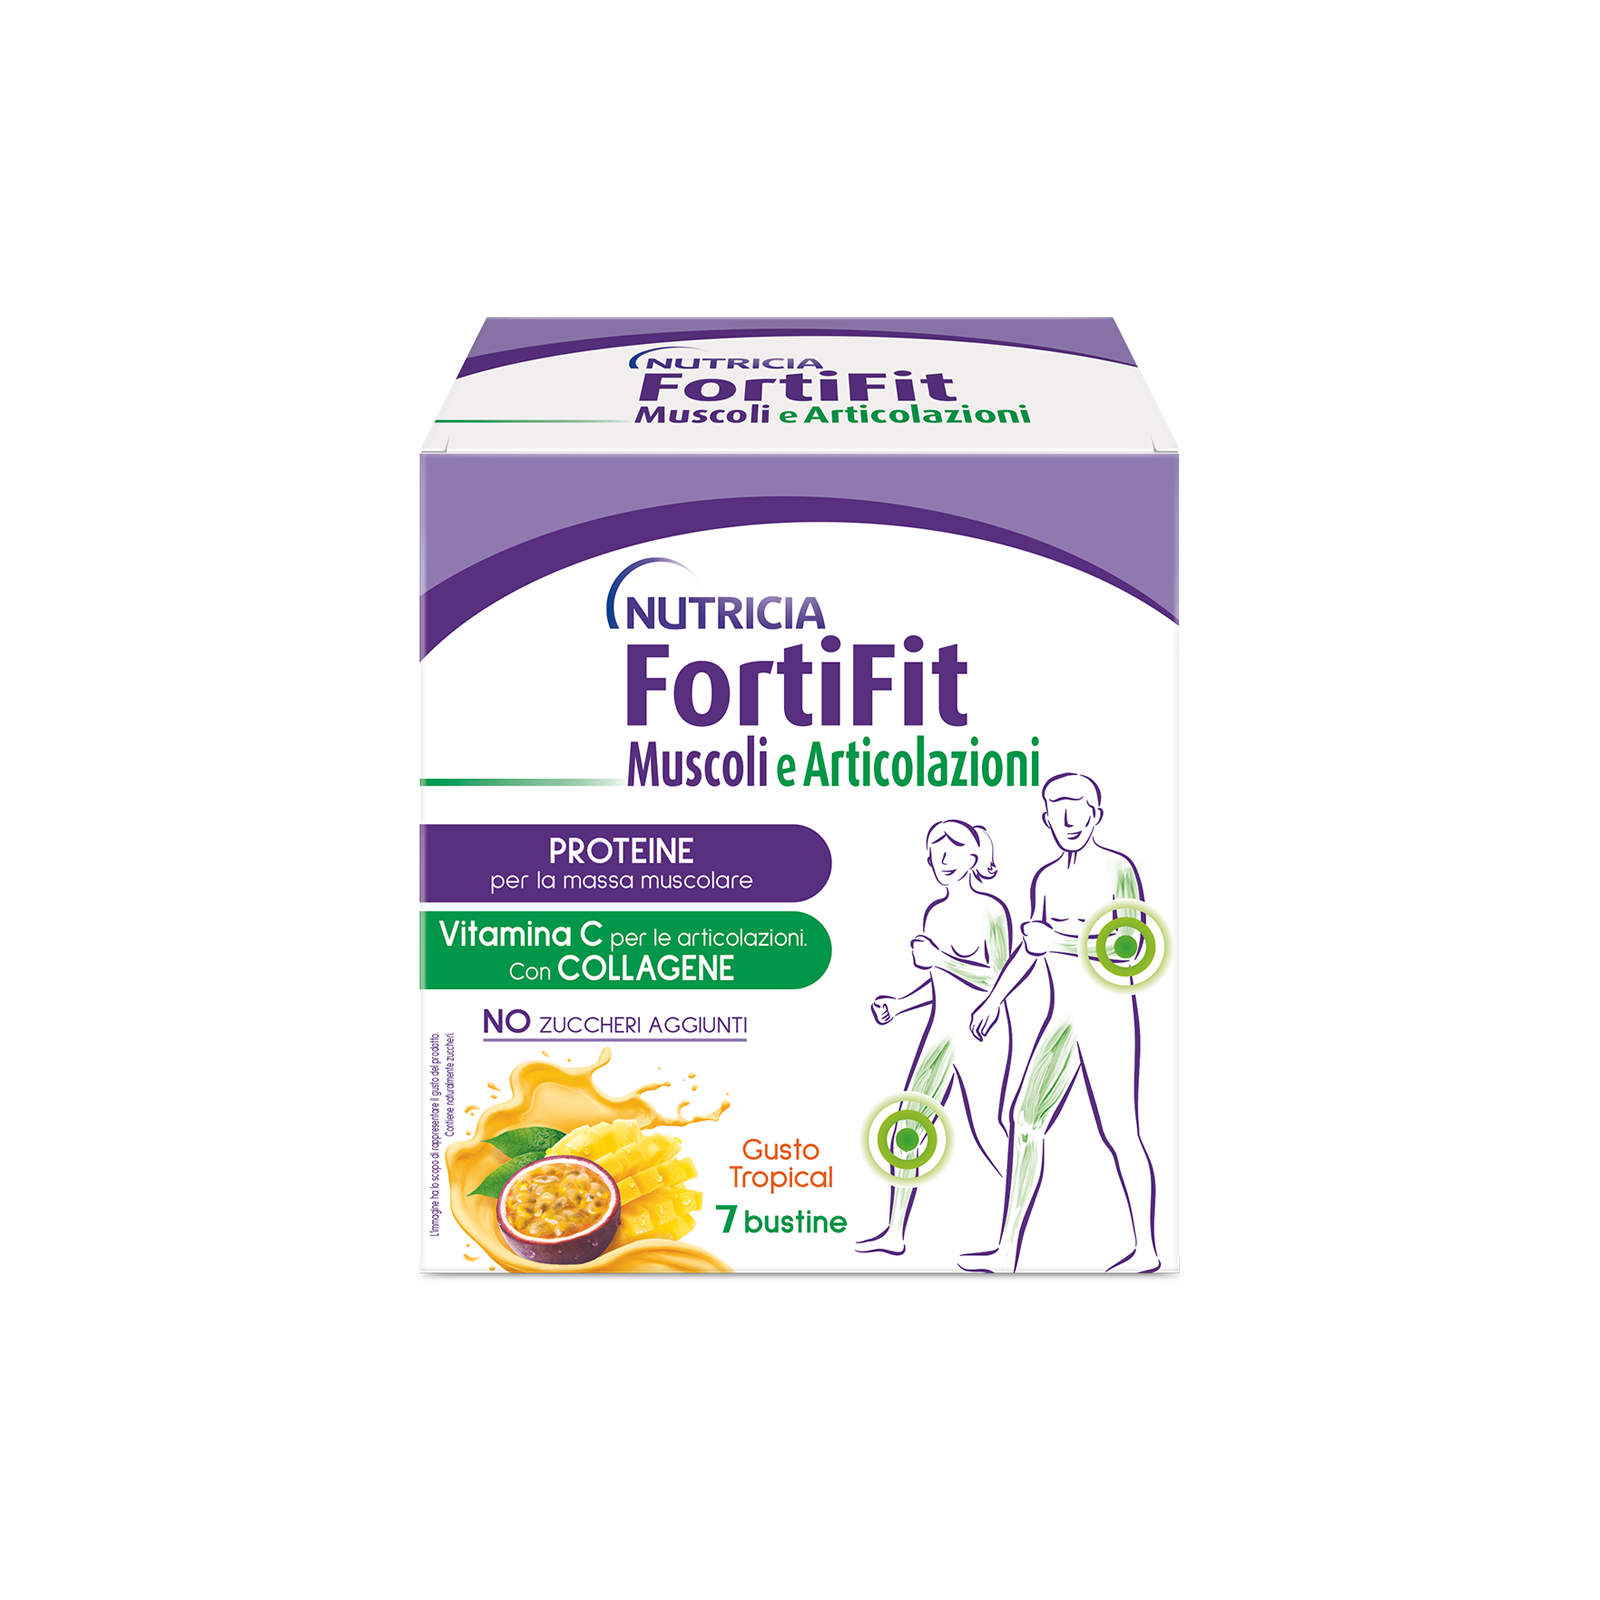 Integratori alimentari - FortiFit Muscoli e Articolazioni Tropical 1 astuccio, FORTIFIT